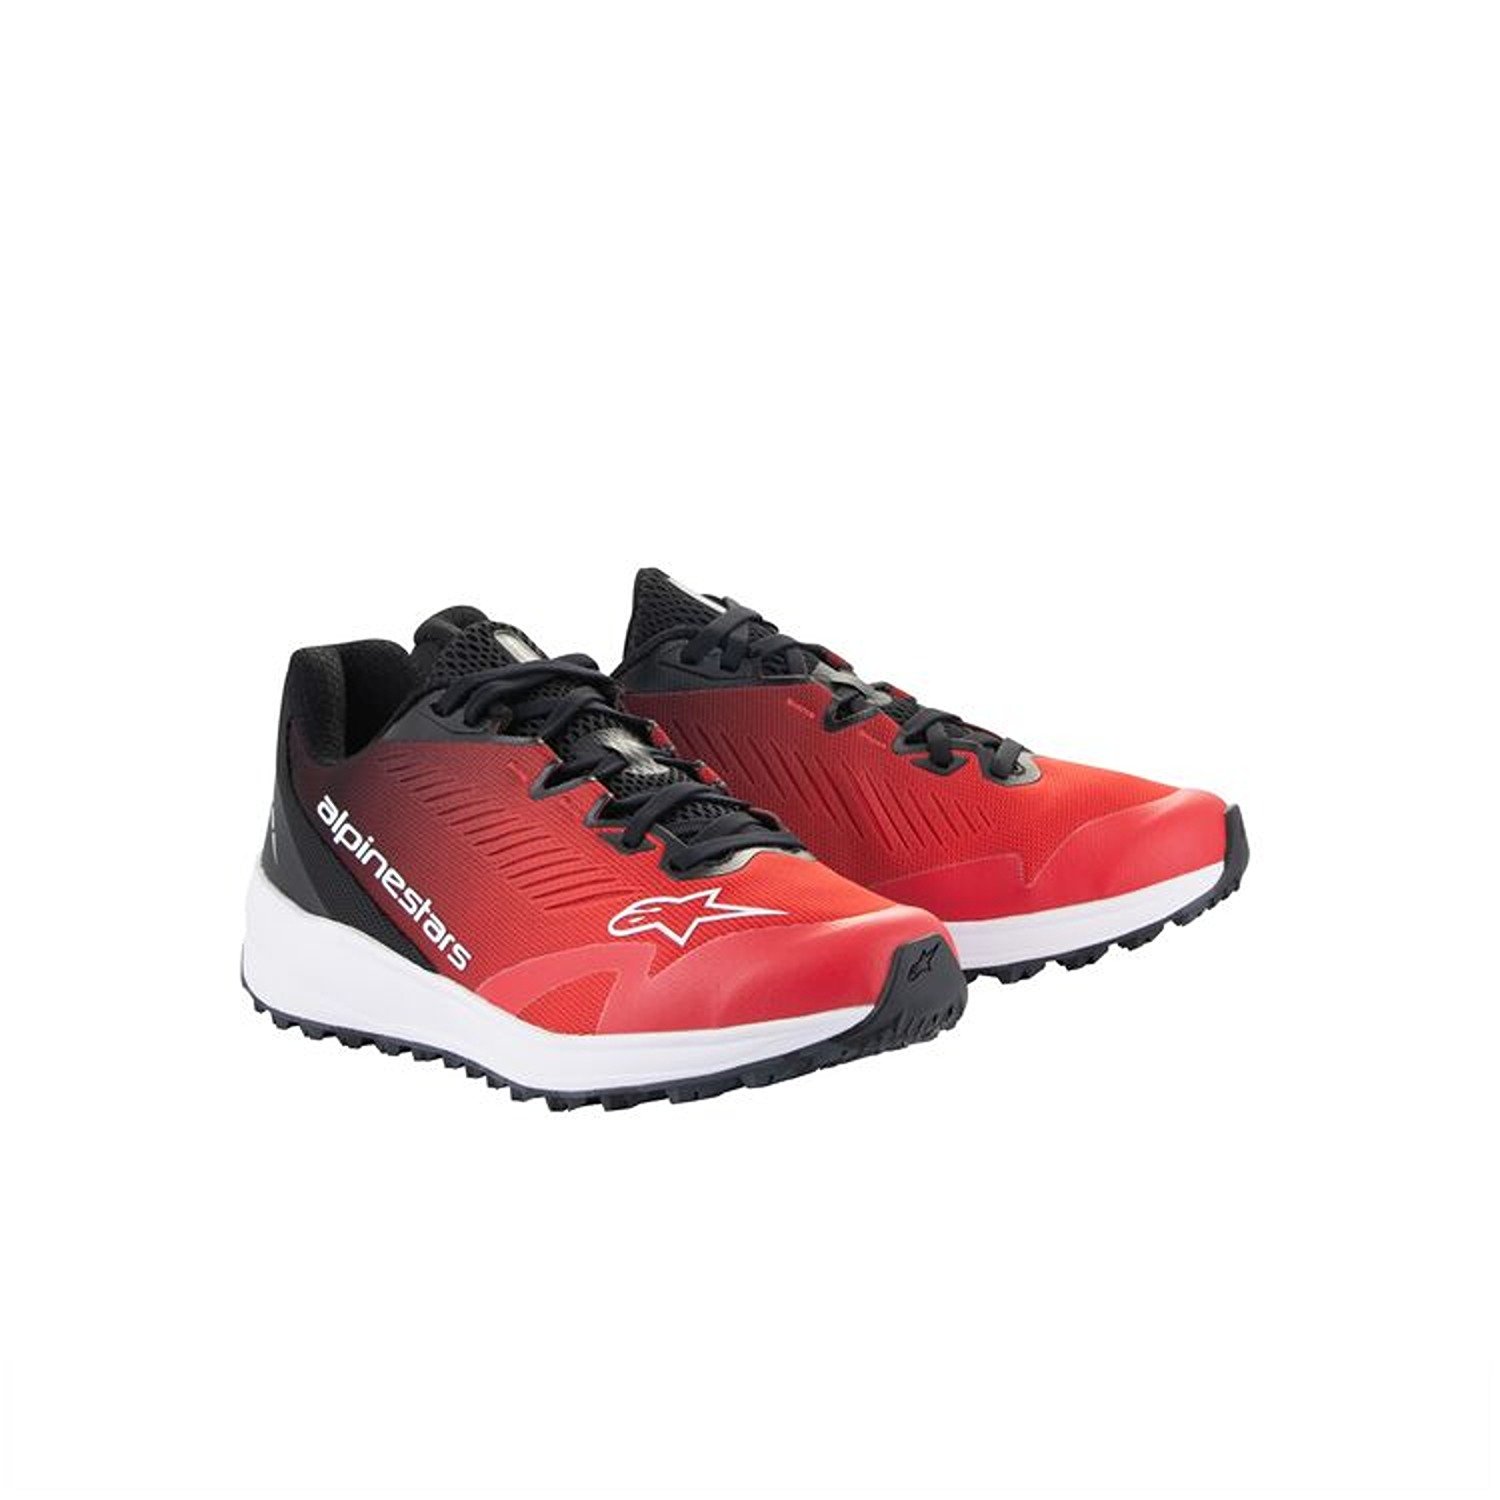 Image of Alpinestars Meta Road V2 Shoes Red Black White Größe US 85